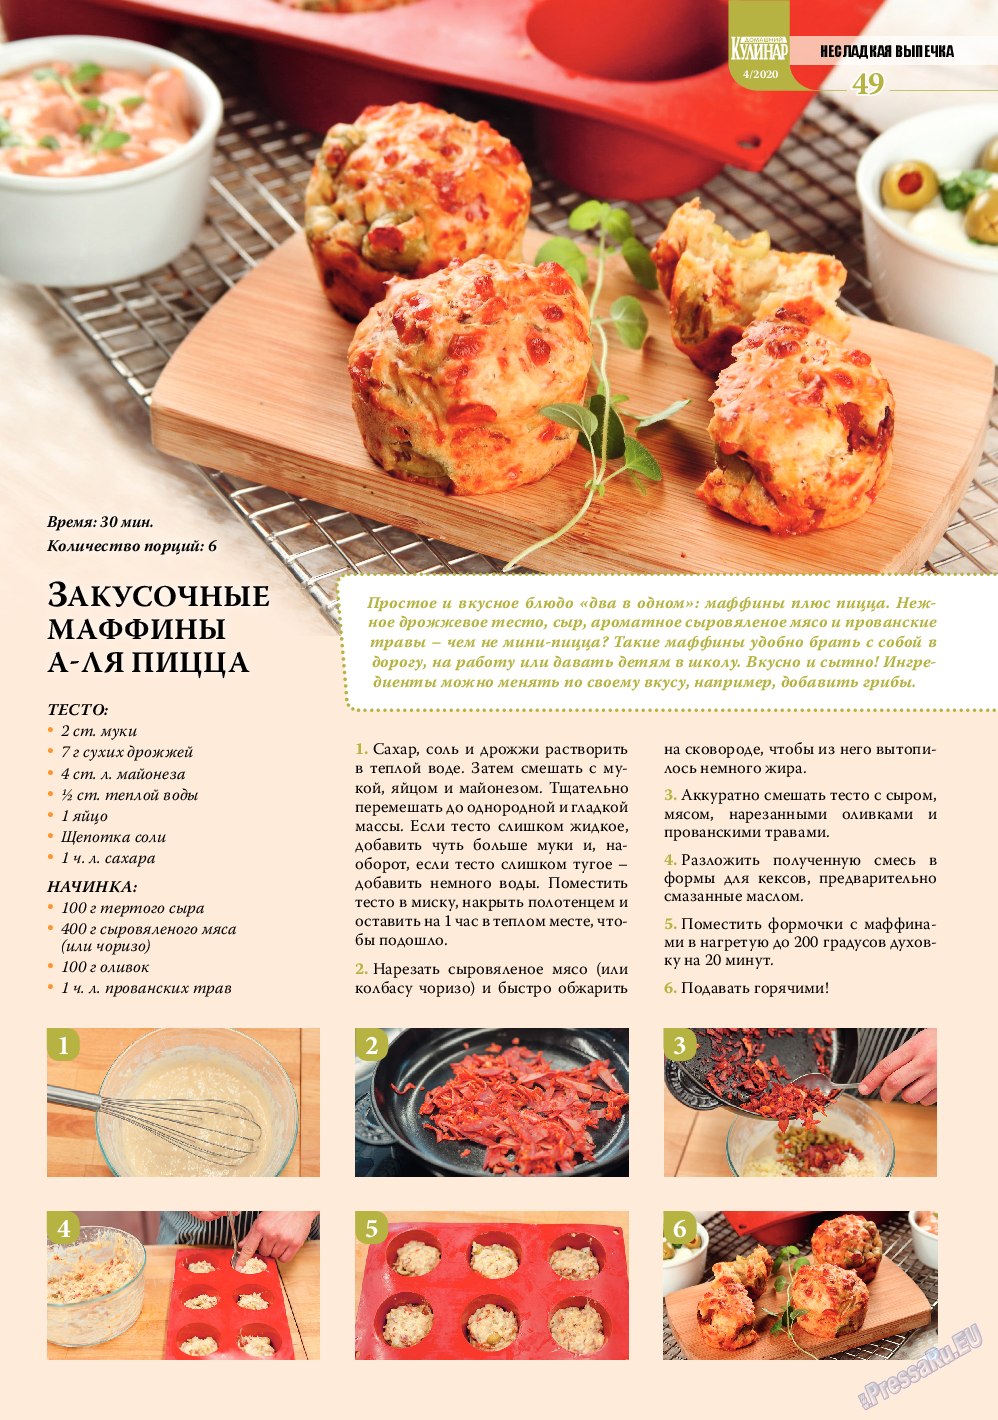 Домашний кулинар, журнал. 2020 №4 стр.49